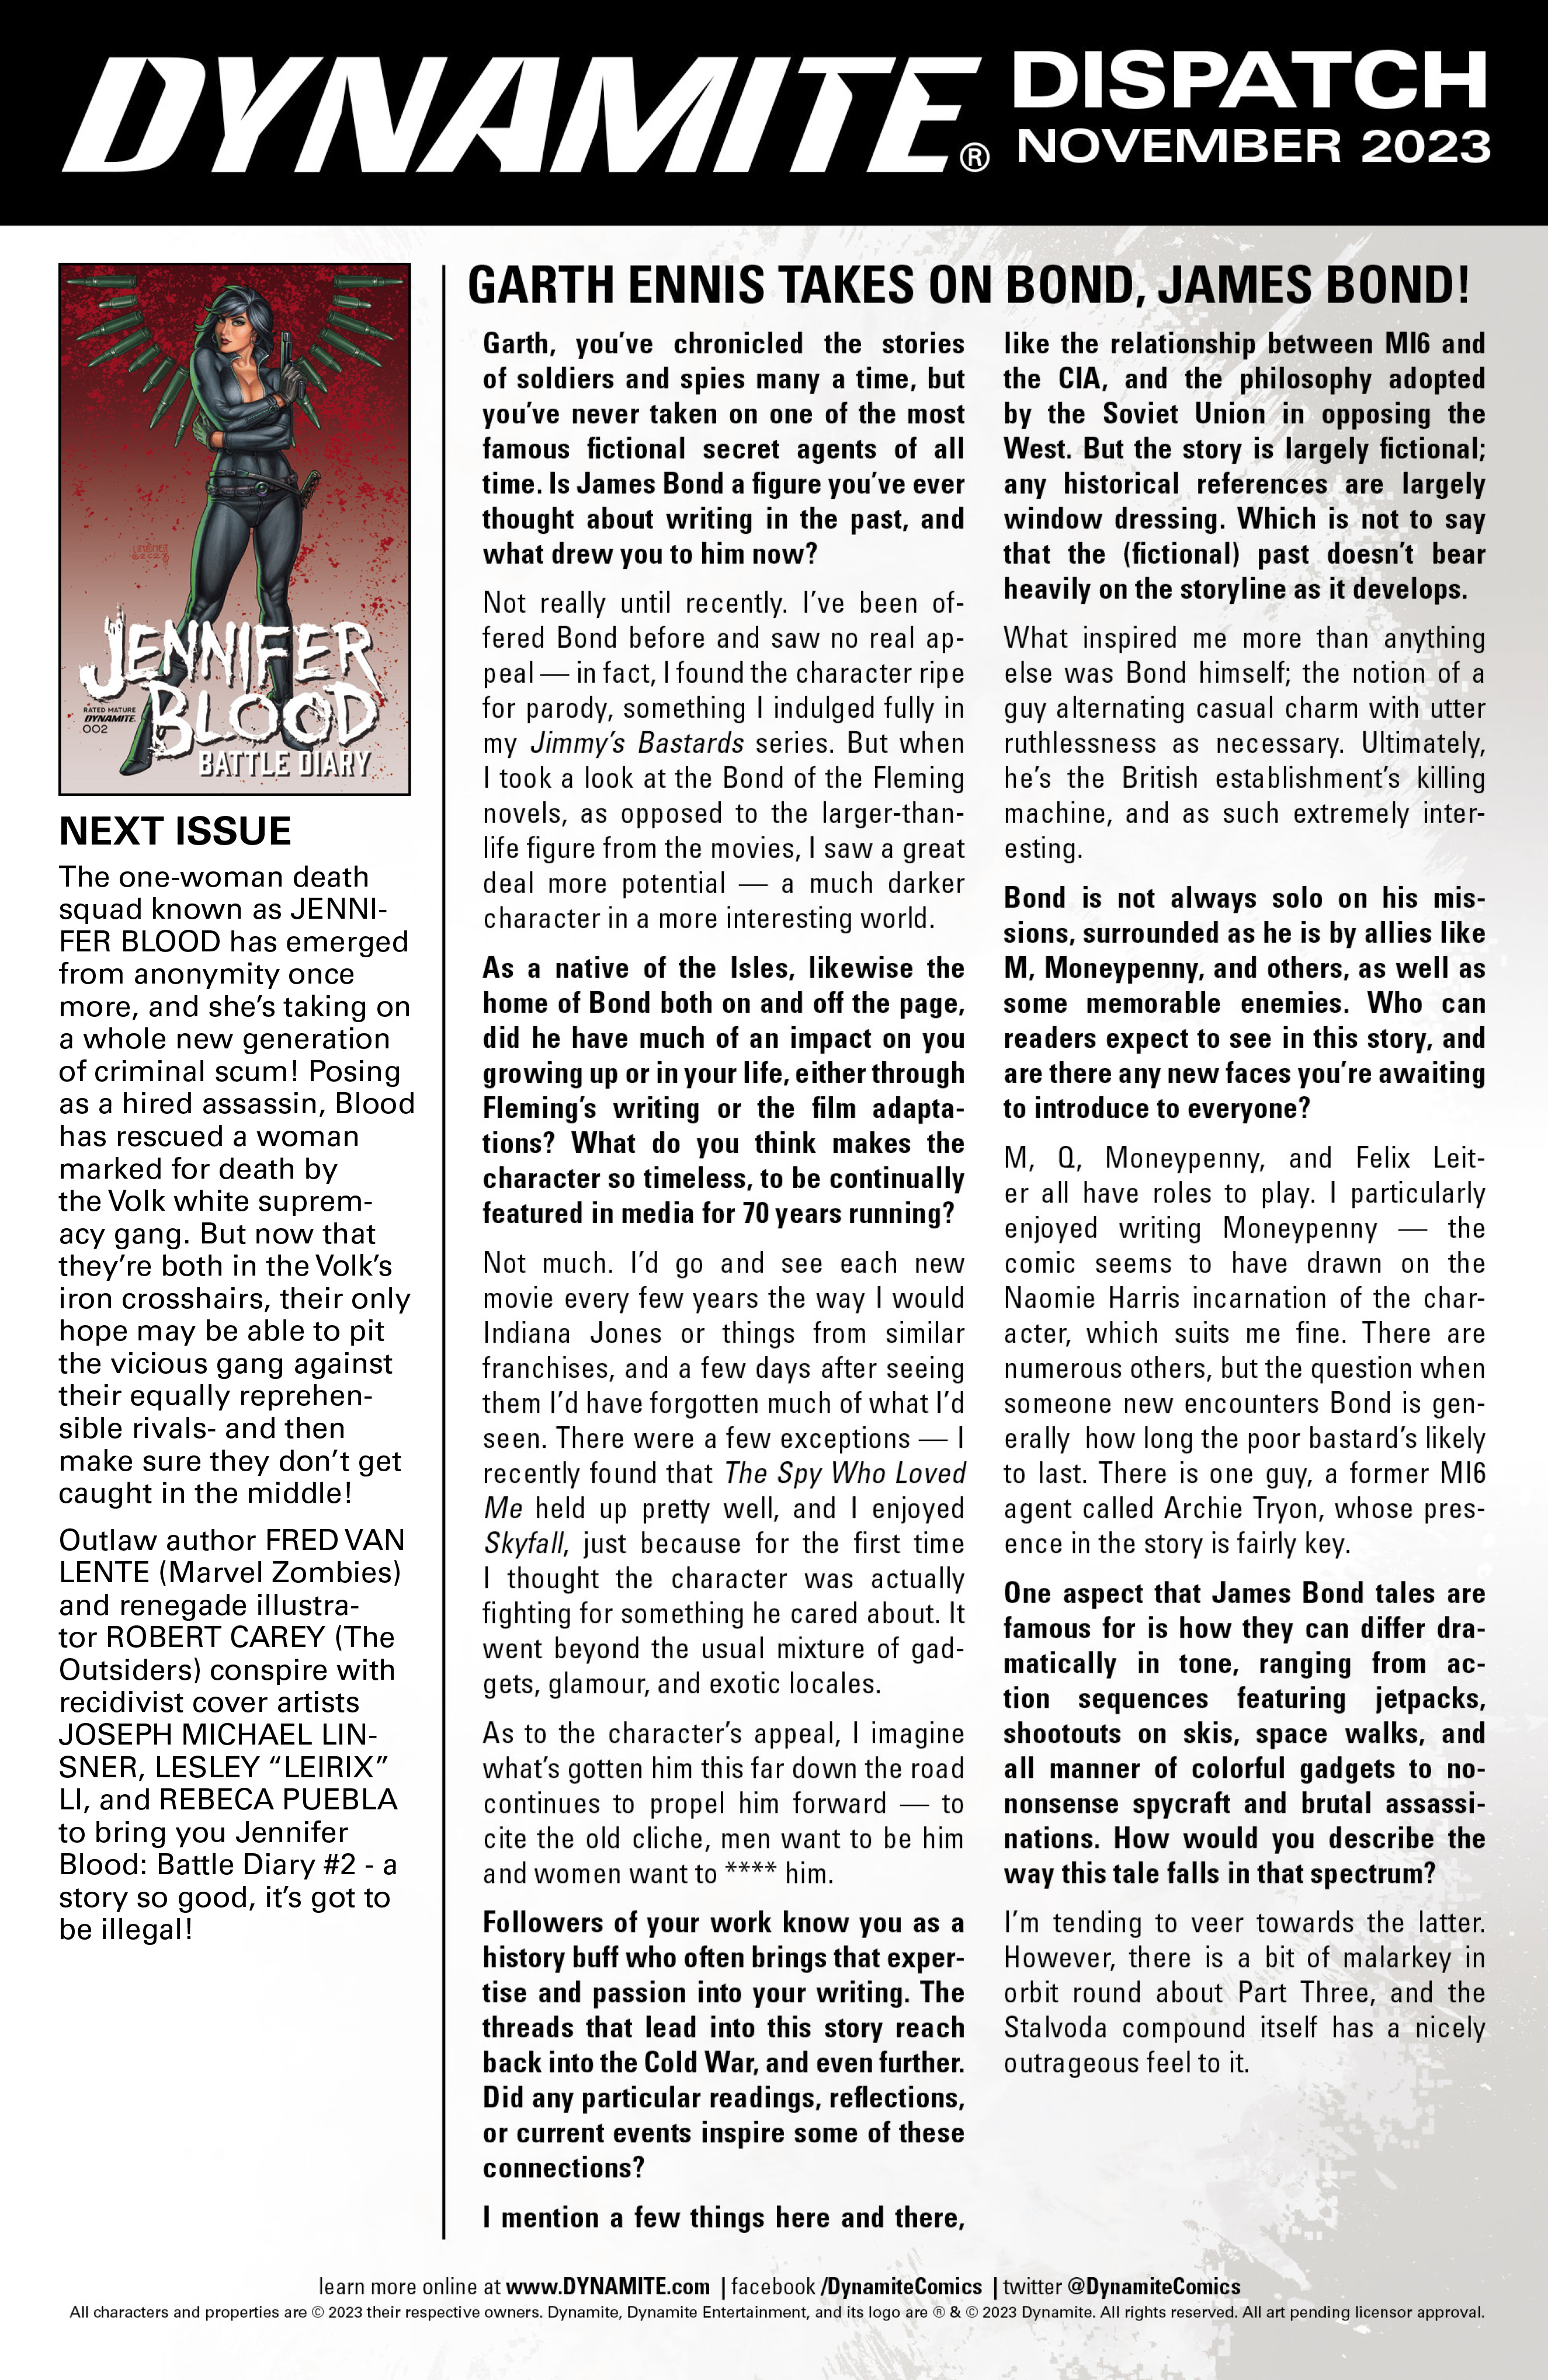 Read online Jennifer Blood: Battle Diary comic -  Issue #1 - 25